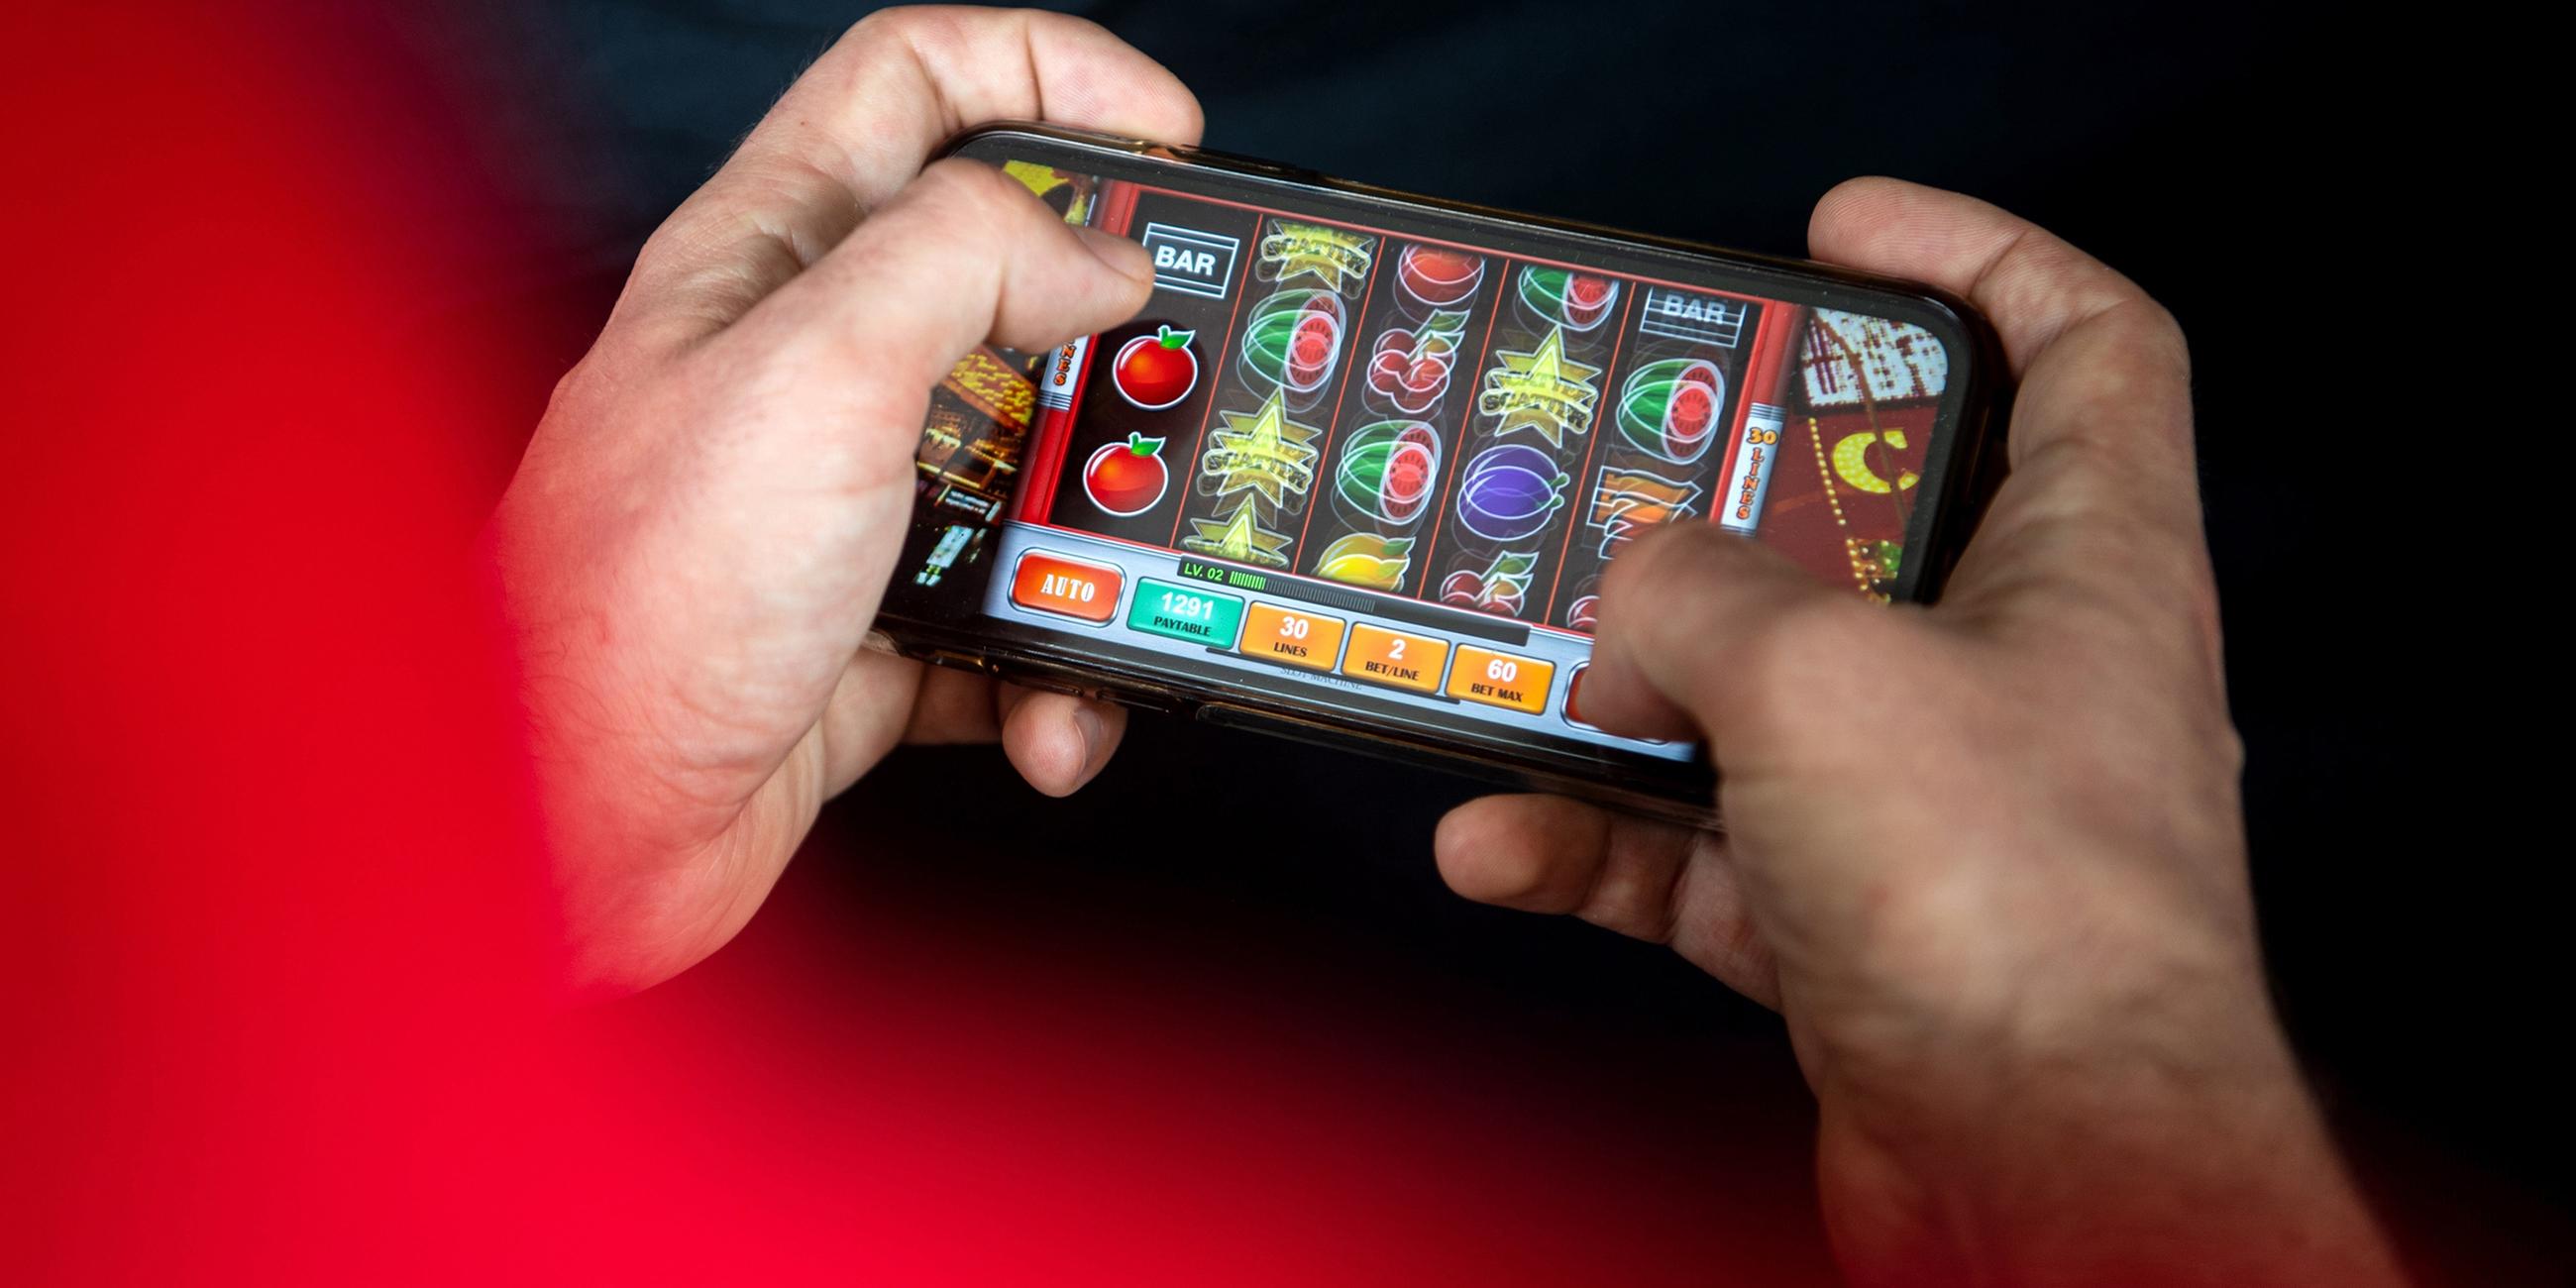 Zwei Hände halten ein Smartphone, darauf wird ein Online-Spiel gespielt.